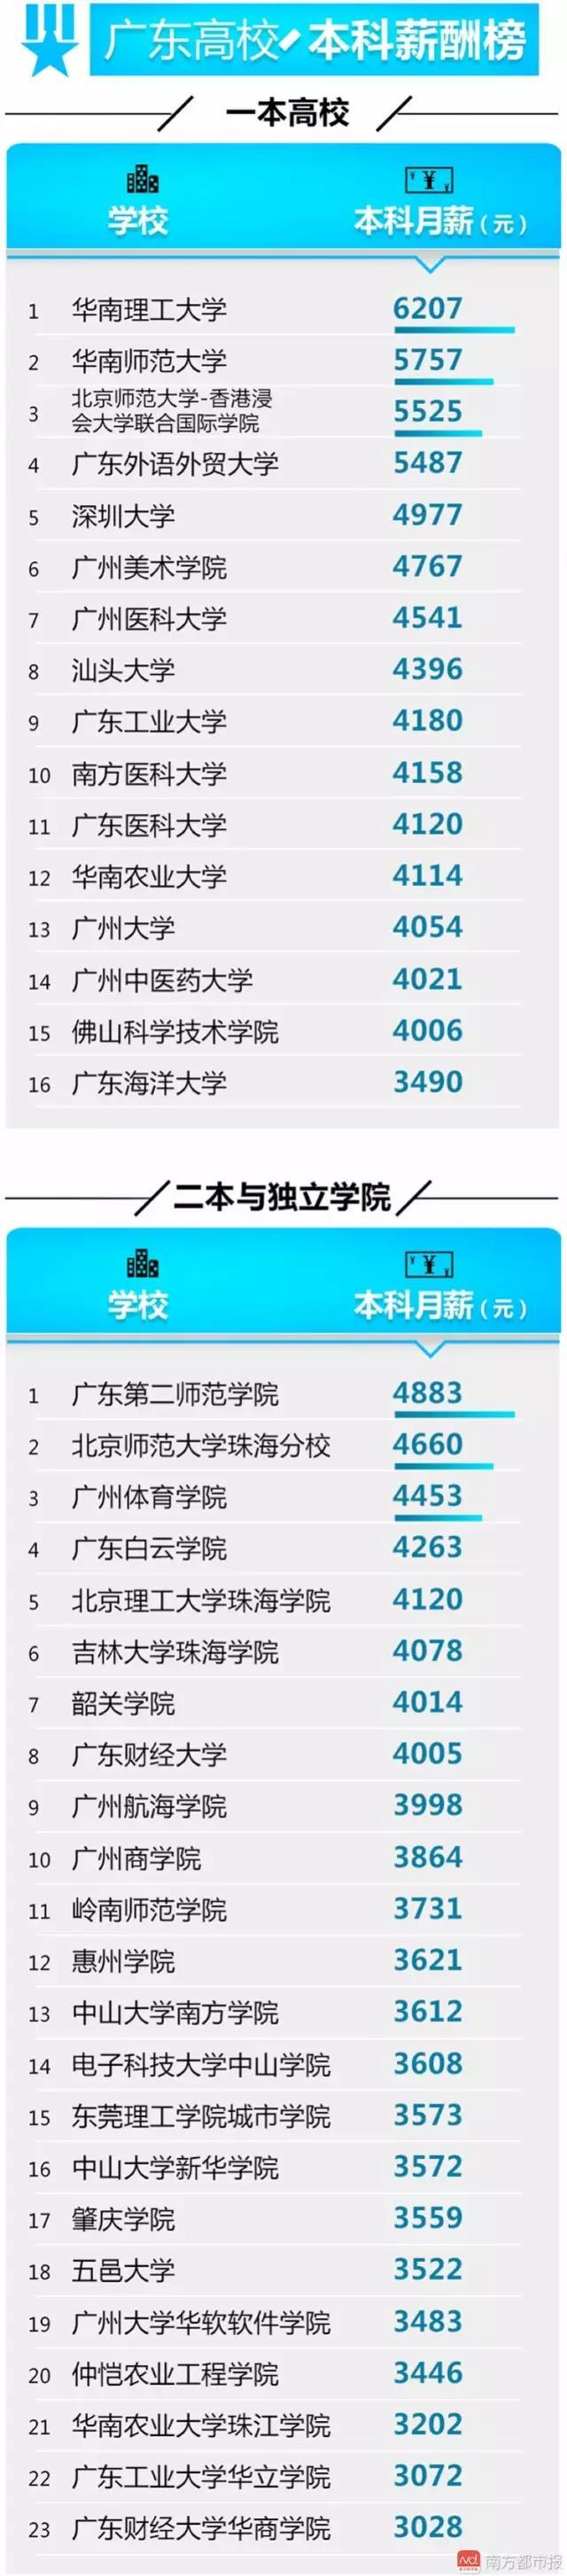 广东高校毕业生达56万 这些专业人才需求旺1